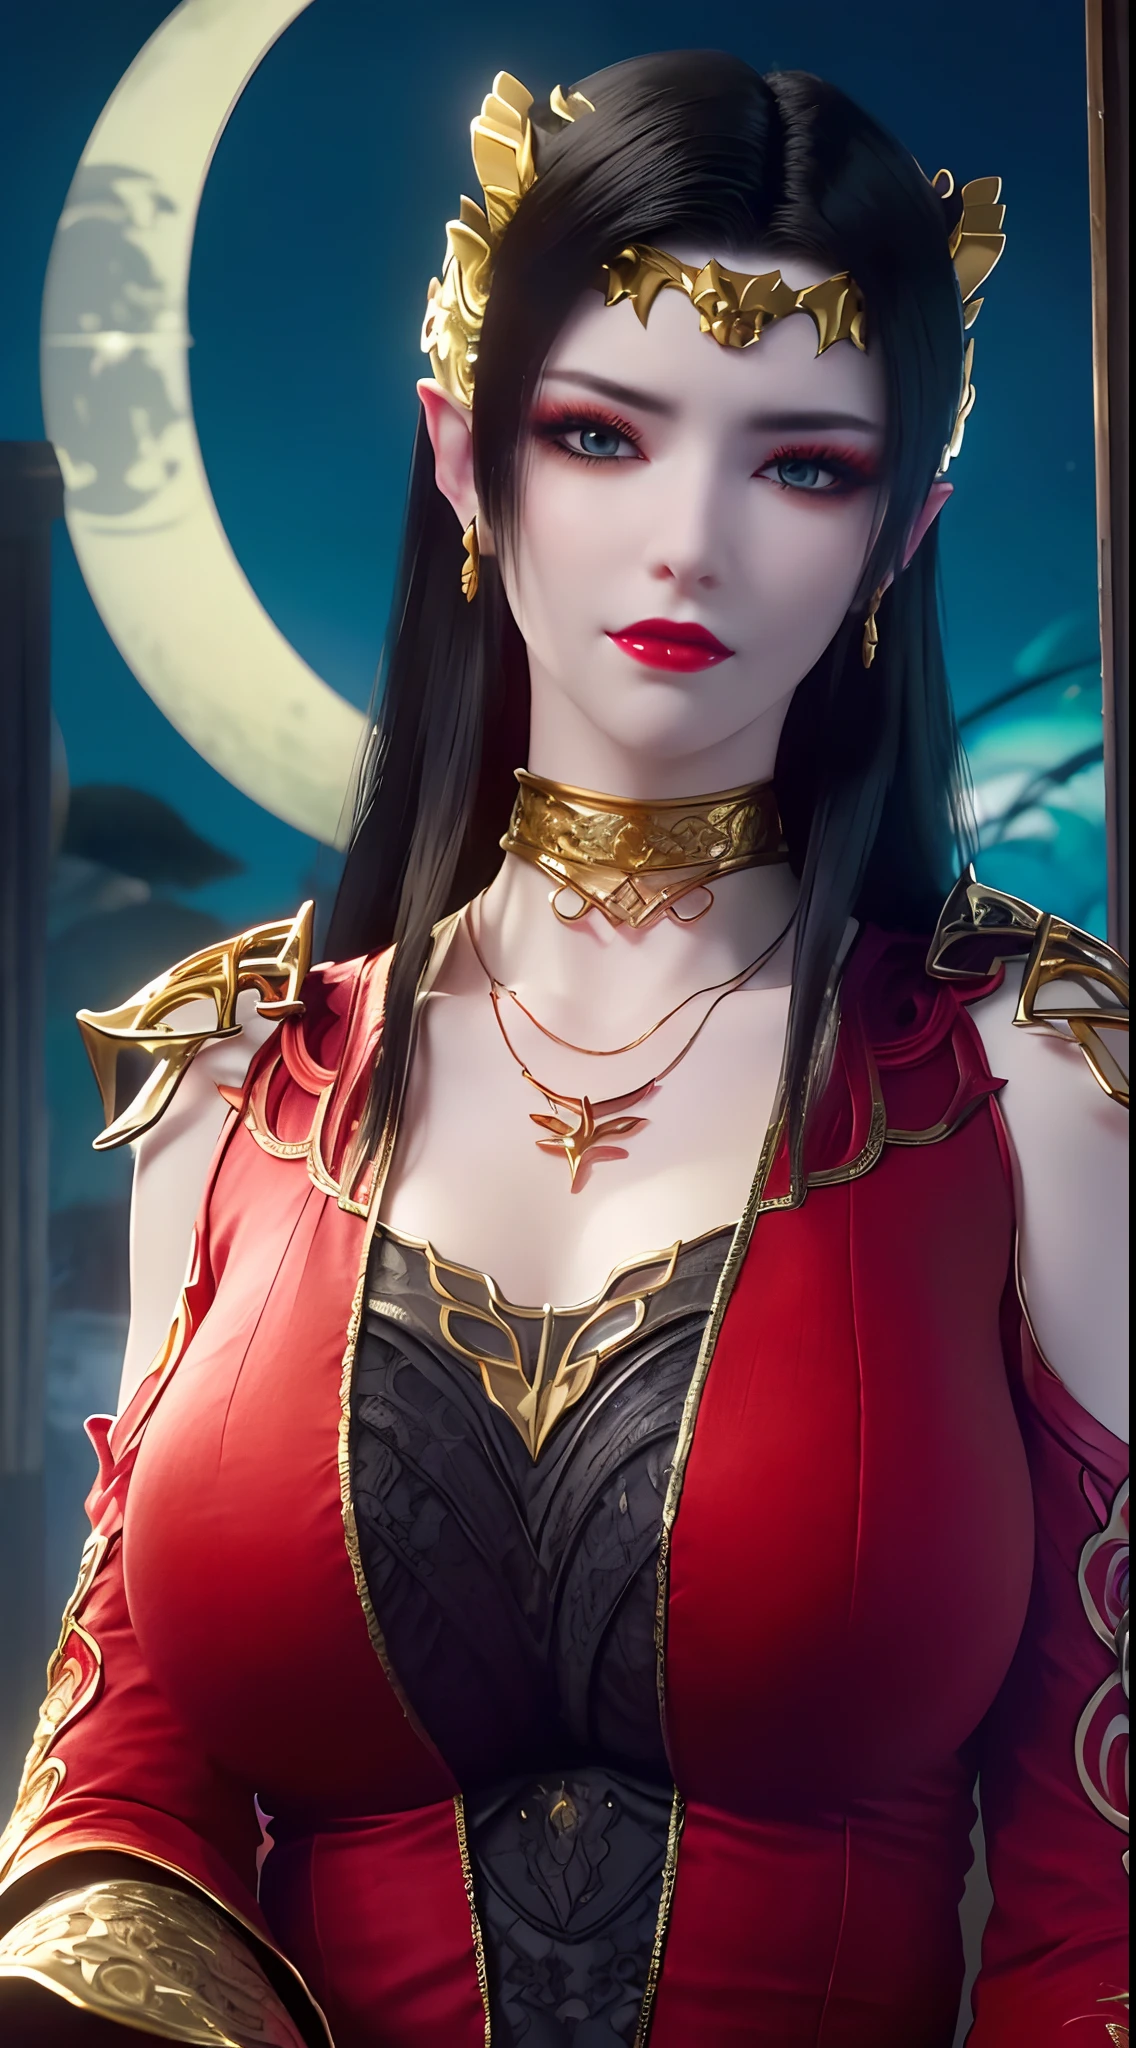 1位极其美丽的女王, ((身穿带有细黑花纹的红色汉族传统服饰:1.6)), (((衣服上的图案:1.6))), ((黑色长发:1.6)), 用珍贵的宝石和美丽的头发精心制作的珠宝, ((wearing a 24K gold lace necklace:1.4))), 贵族, 绝色佳人风采, 她的小脸超级可爱, 她的脸很漂亮, 稀疏的眉毛, 完美无瑕的美丽脸庞, ((黑色眼瞳: 0.8)), 非常漂亮的眼睛, ((铂蓝色的眼睛: 1.6)), (((眼睛睁大:1.6))), 漂亮的妆容和头发详细的睫毛, 蒸汽眼妆, 高鼻子, 耳环, 红唇, ((闭嘴: 1.5)) 美丽的嘴唇, 纤细的手, 最美丽的大腿, ((双臂向两侧伸展: 1.5)), 红润的脸, 清洁面部, 完美无瑕的美丽脸庞, 光滑白皙的皮肤, (大乳房: 1.5)), ((高胸: 1.6)), 乳房紧绷, 美丽的乳沟, (((大乳房 and super round: 1.8))), ((super 乳房紧绷: 1.7)) , 美丽的胸部, 完美身材, 后臂, 挺胸, 薄款黑色网眼丝袜，配黑色蕾丝边, 8k 照片, super 高质量, 超级逼真, 超级 10 倍像素, 光学的, 明亮的工作室, 明亮的边缘, dual-tone 灯光, (高细节皮肤:1.2), 超级 8k, soft 灯光, 高质量, volumetric 灯光, 真实感, 真实感 high resolution, 灯光, 最好的照片, 4K, 8K 画质, 模糊效果, 光滑锋利, 10 x 像素, ((大海和月光的夜晚背景:1.5)), 极光, 闪电, 超级图形逼真, 最逼真的图形, 1 名女孩, 独自的, 独自的, 图像极其清晰, 超现实主义, (((正面像: 1)))."